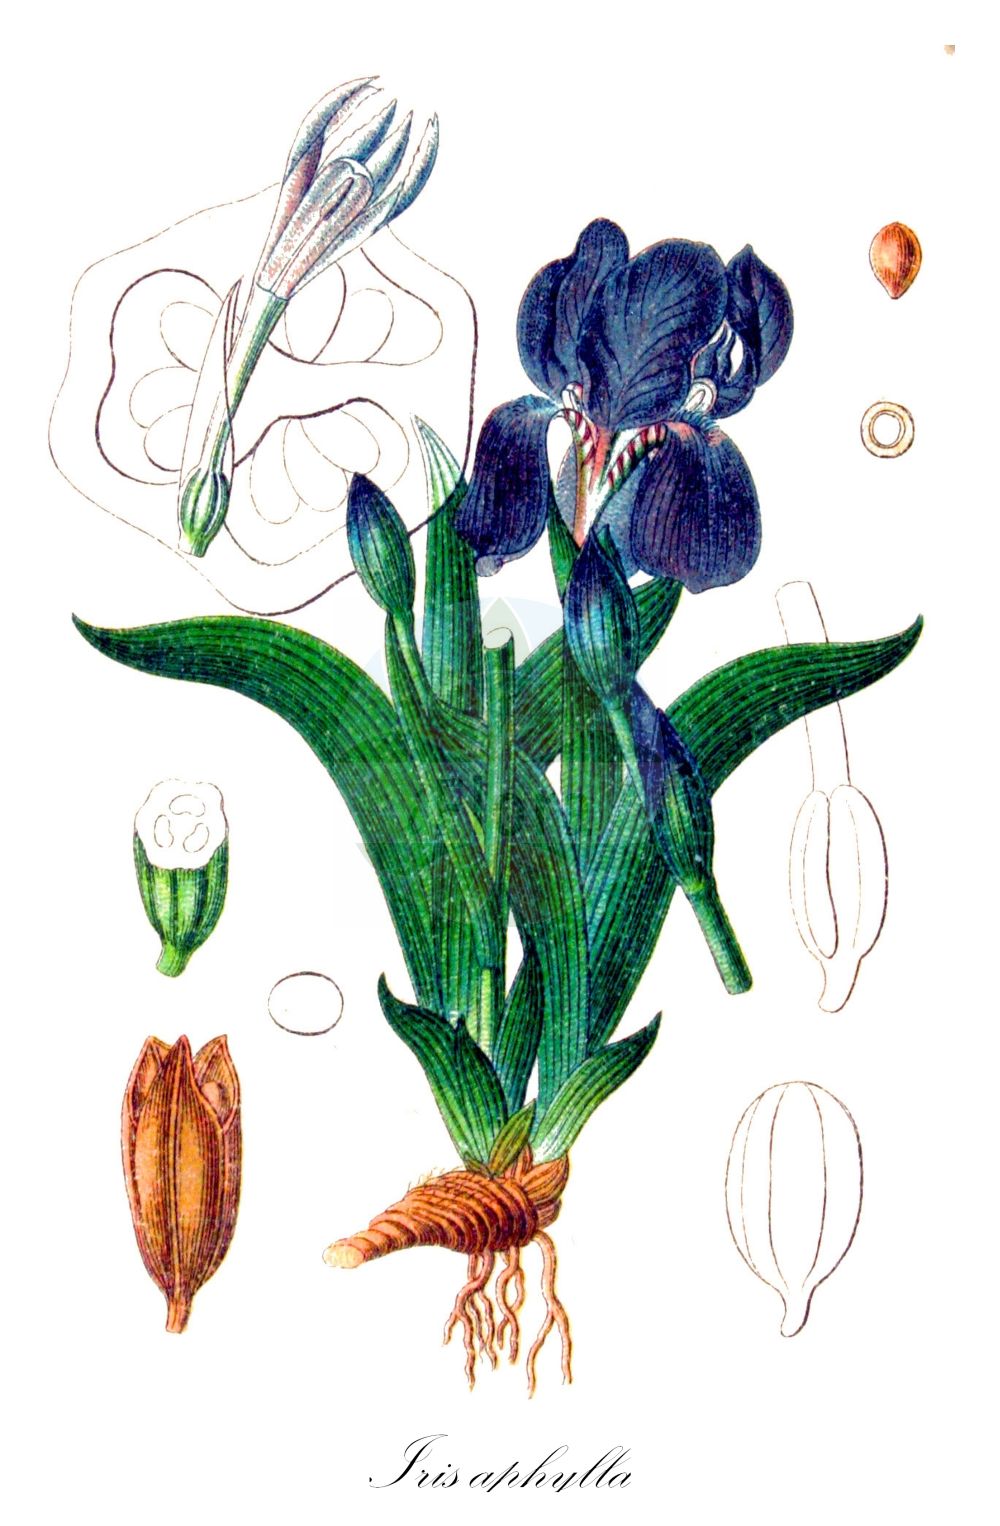 Historische Abbildung von Iris aphylla (Nacktstängelige Schwertlilie - Stool Iris). Das Bild zeigt Blatt, Bluete, Frucht und Same. ---- Historical Drawing of Iris aphylla (Nacktstängelige Schwertlilie - Stool Iris). The image is showing leaf, flower, fruit and seed.(Iris aphylla,Nacktstängelige Schwertlilie,Stool Iris,Iris aphylla,Iris babadagica,Iris bifurca,Iris bisflorens,Iris bohemica,Iris breviscapa,Iris dacica,Iris diantha,Iris duerinckii,Iris extrafoliacea,Iris falcata,Iris fieberi,Iris furcata,Iris hungarica,Iris melzeri,Iris nudicaulis,Iris perrieri,Iris reflexa,Iris rigida,Iris sabina,Iris schmidtii,Iris subtriflora,Iris tenorei,Nacktstaengelige Schwertlilie,Nacktstengelige Schwertlilie,Stool Iris,Iris,Schwertlilie,Iris,Iridaceae,Schwertliliengewächse,Iris family,Blatt,Bluete,Frucht,Same,leaf,flower,fruit,seed,Sturm (1796f))